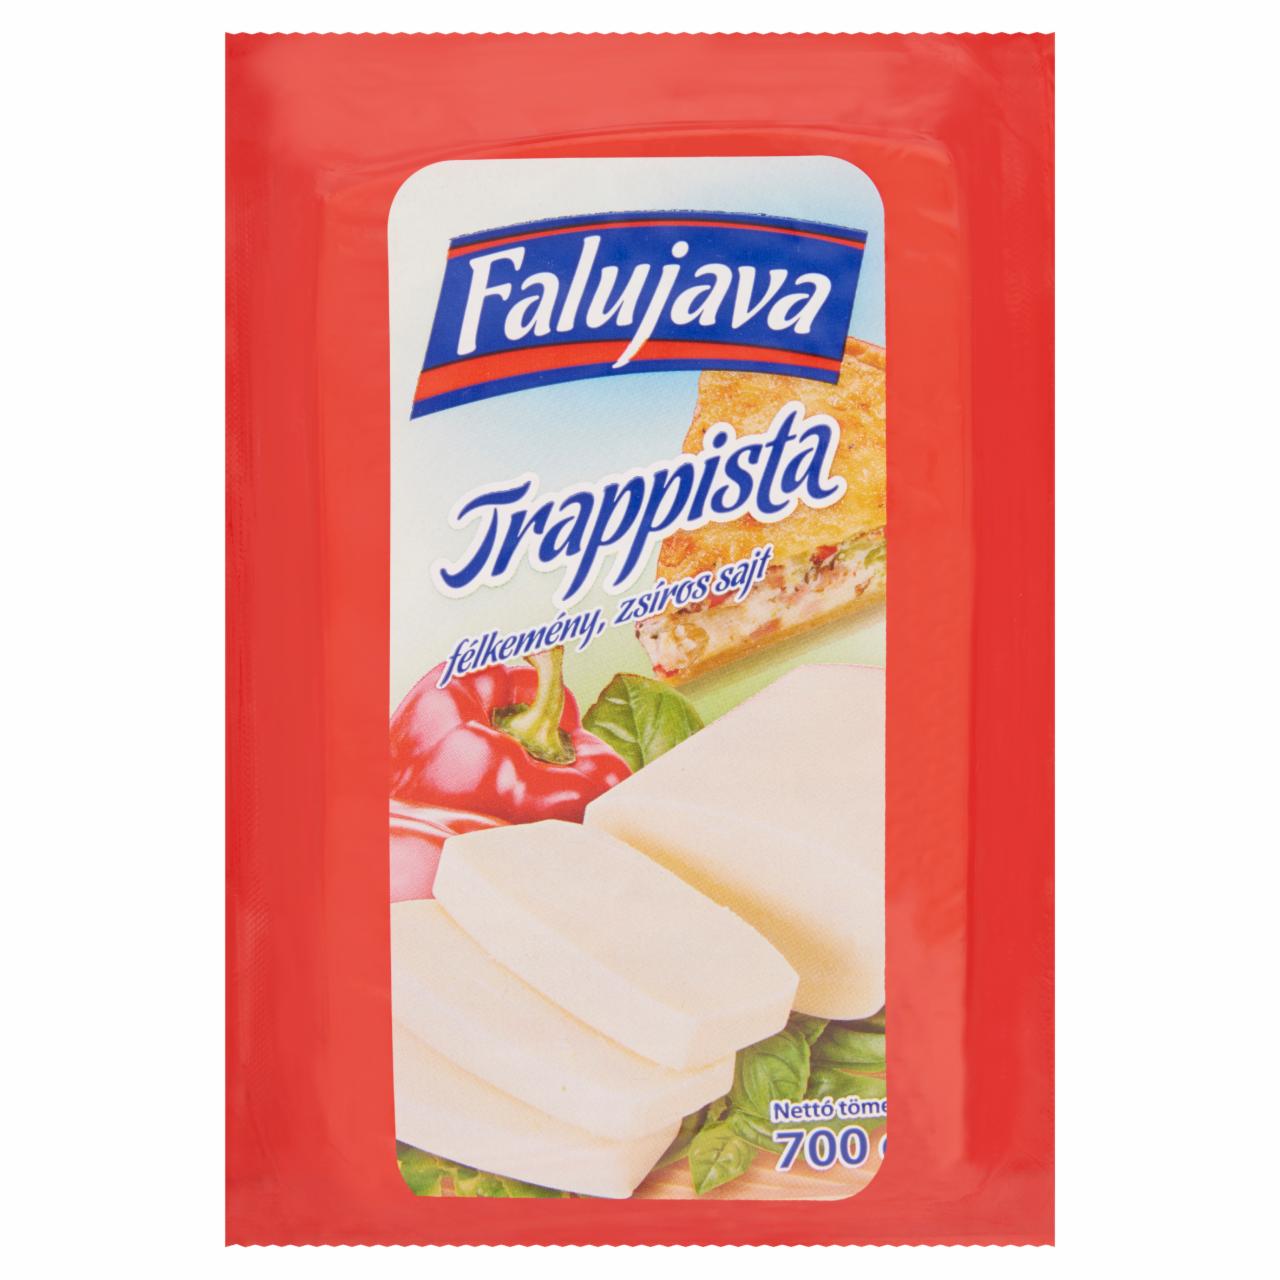 Képek - Falujava félkemény, zsíros trappista sajt 700 g